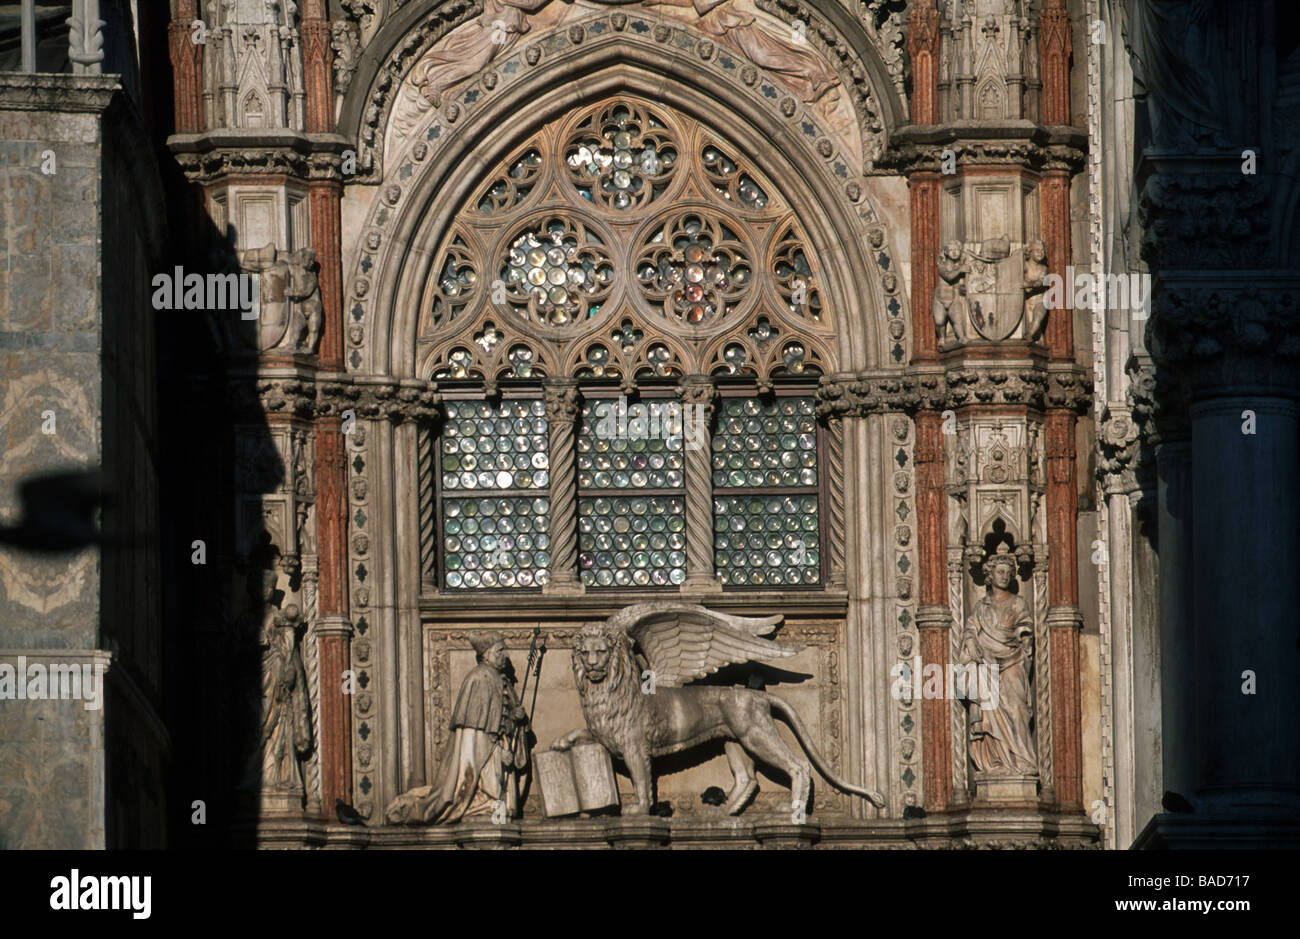 Italien, Venedig, Stadtteil San Marco, Palazzo Ducale, gotisches Maßwerkfenster über der Porta della Carta Stock Photo